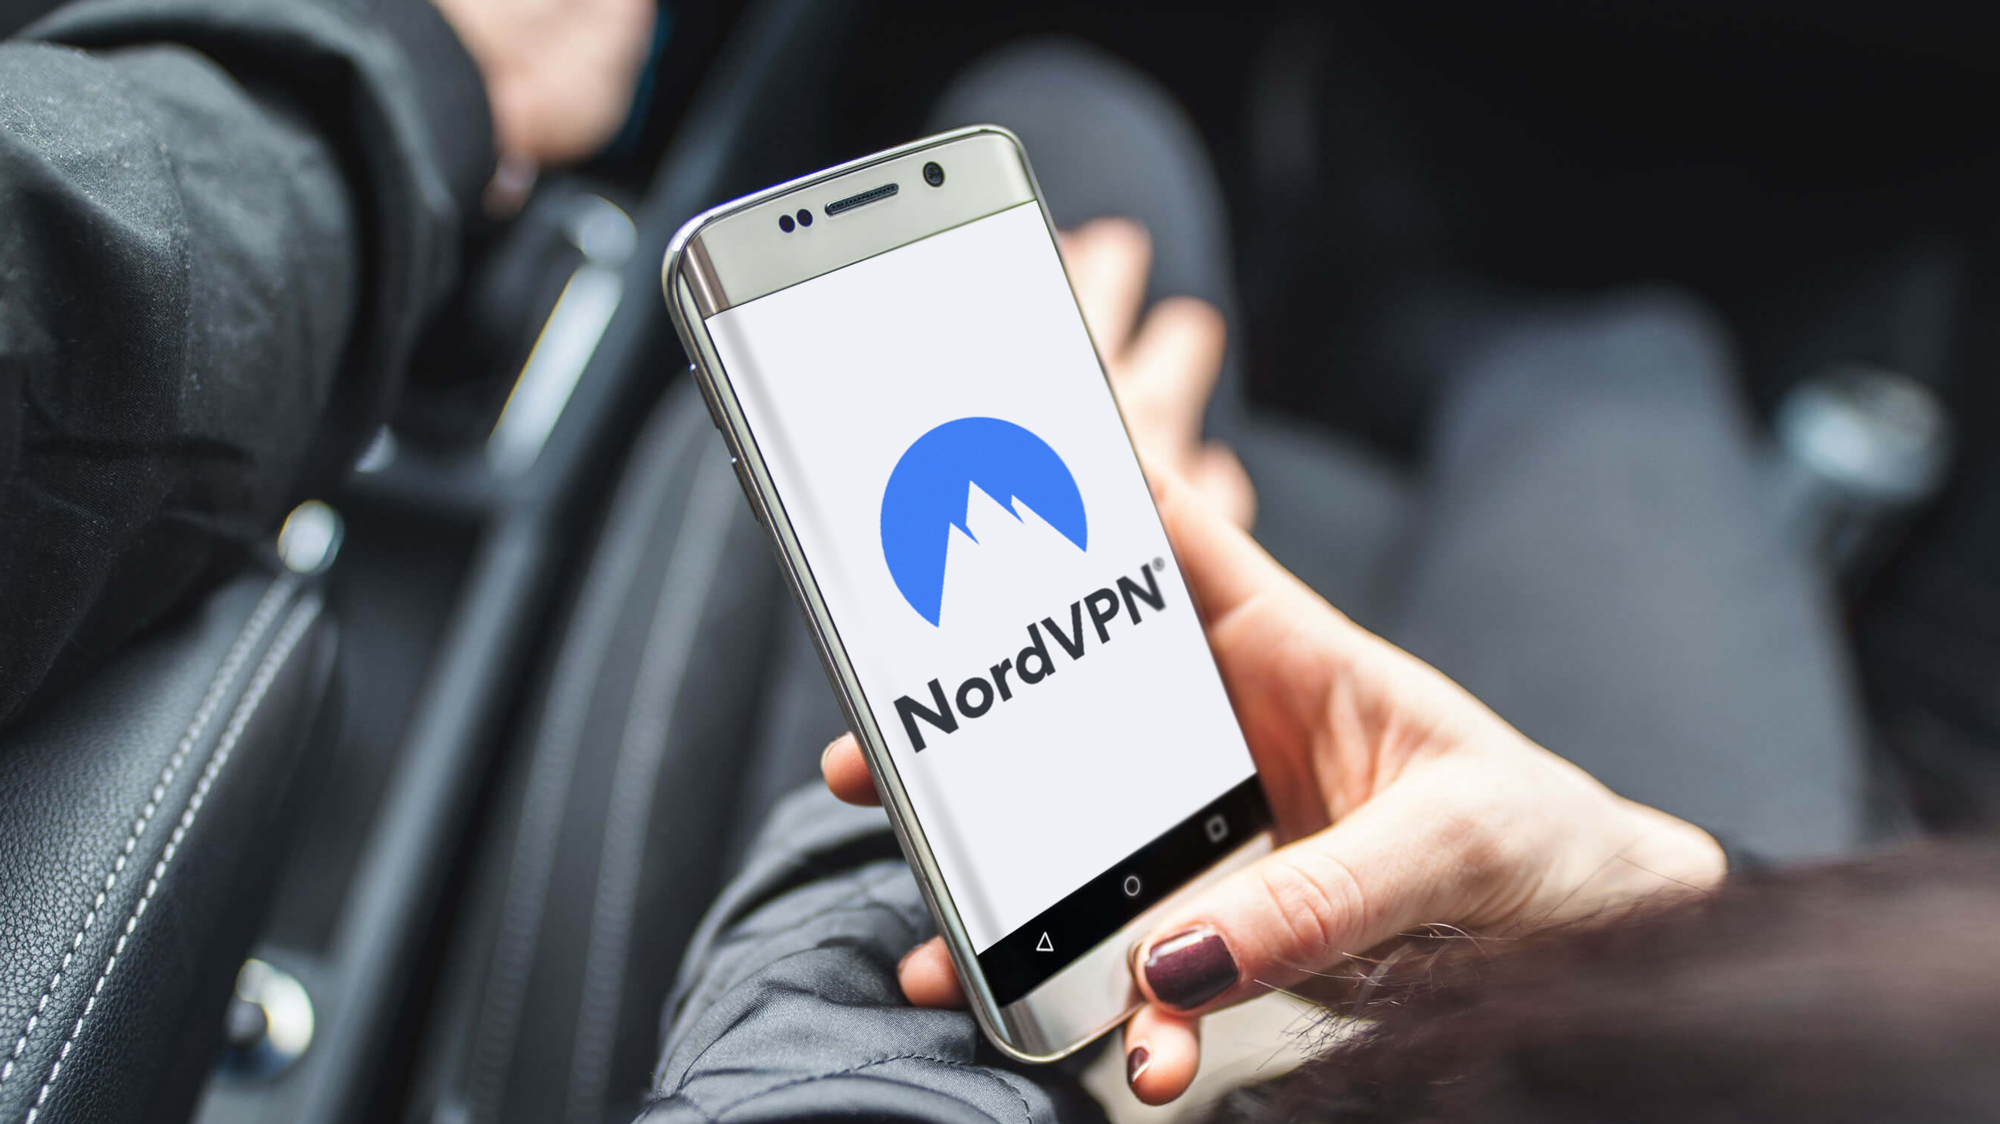 NordVPN запускает новый инструмент для борьбы с фишингом с поддержкой искусственного интеллекта и ищет тестировщиков